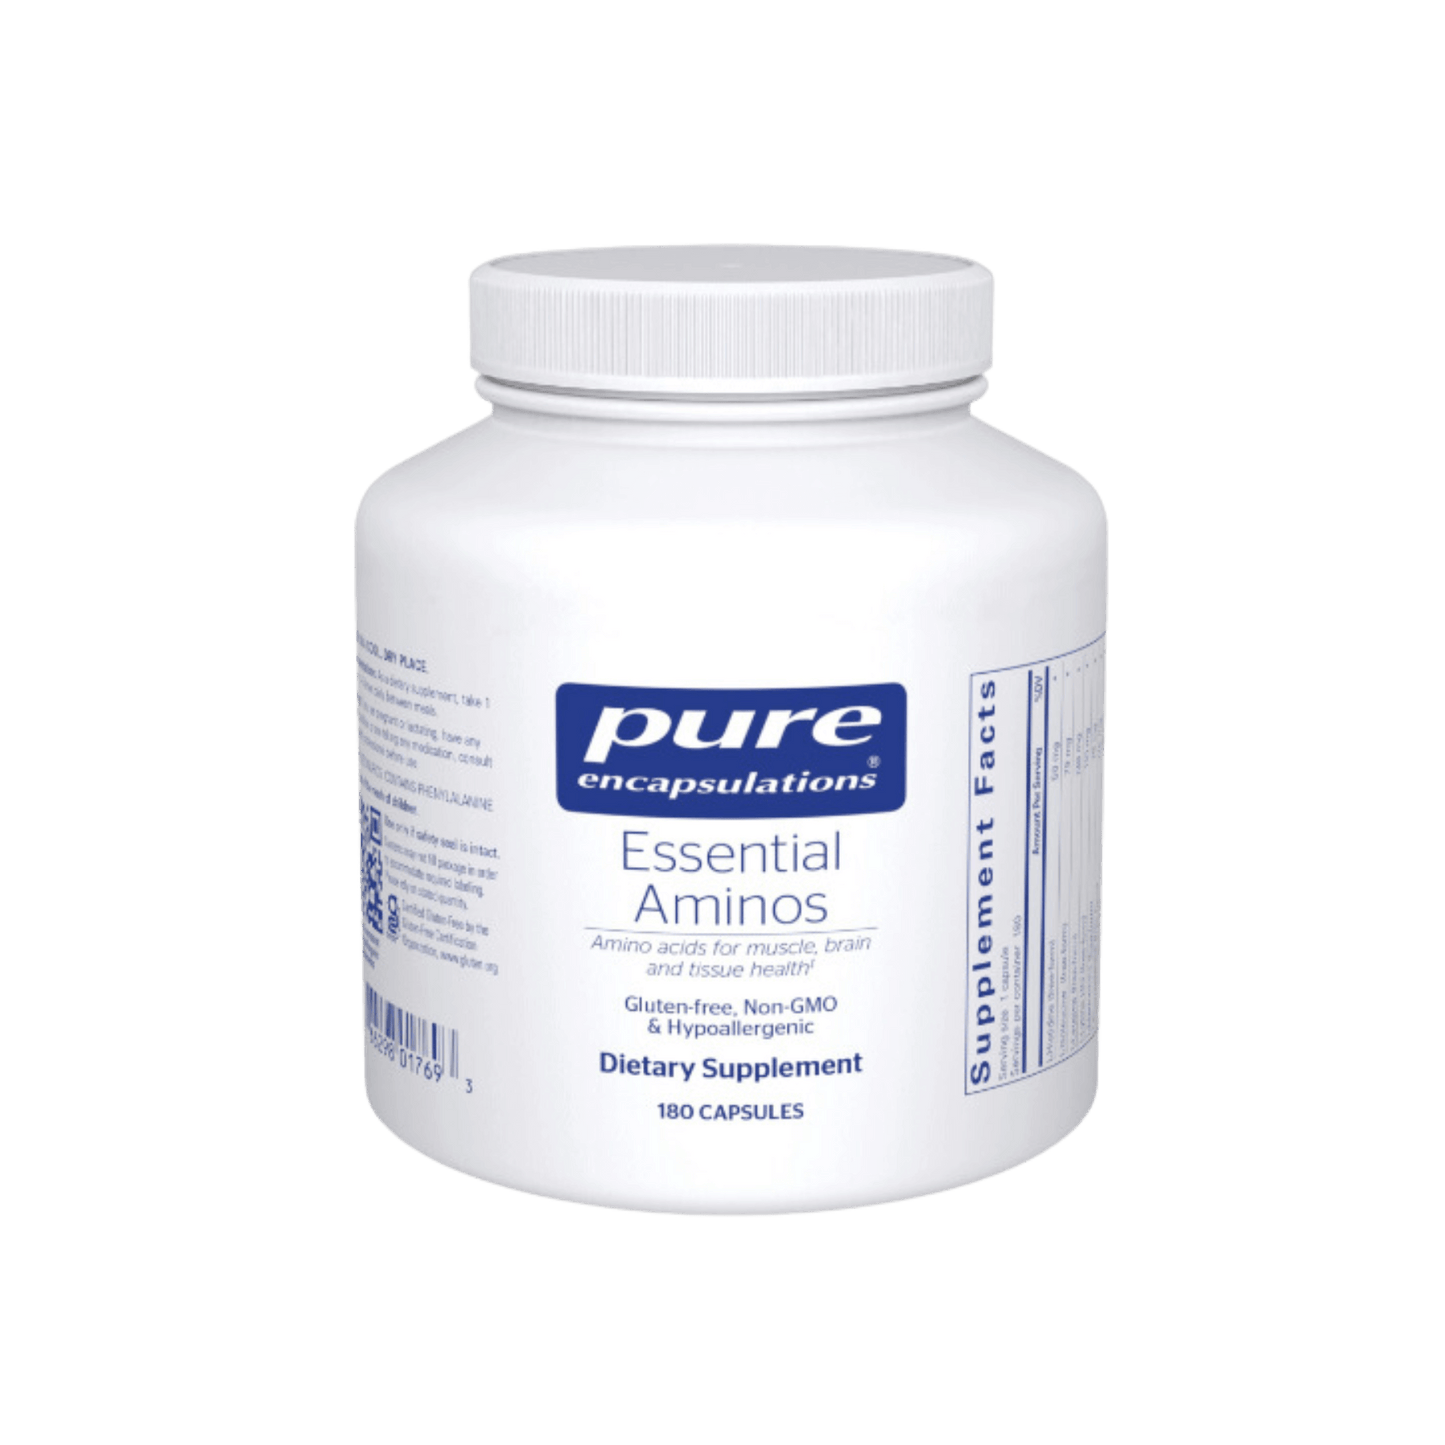 Pure Encapsulations Essential Aminos Capsules